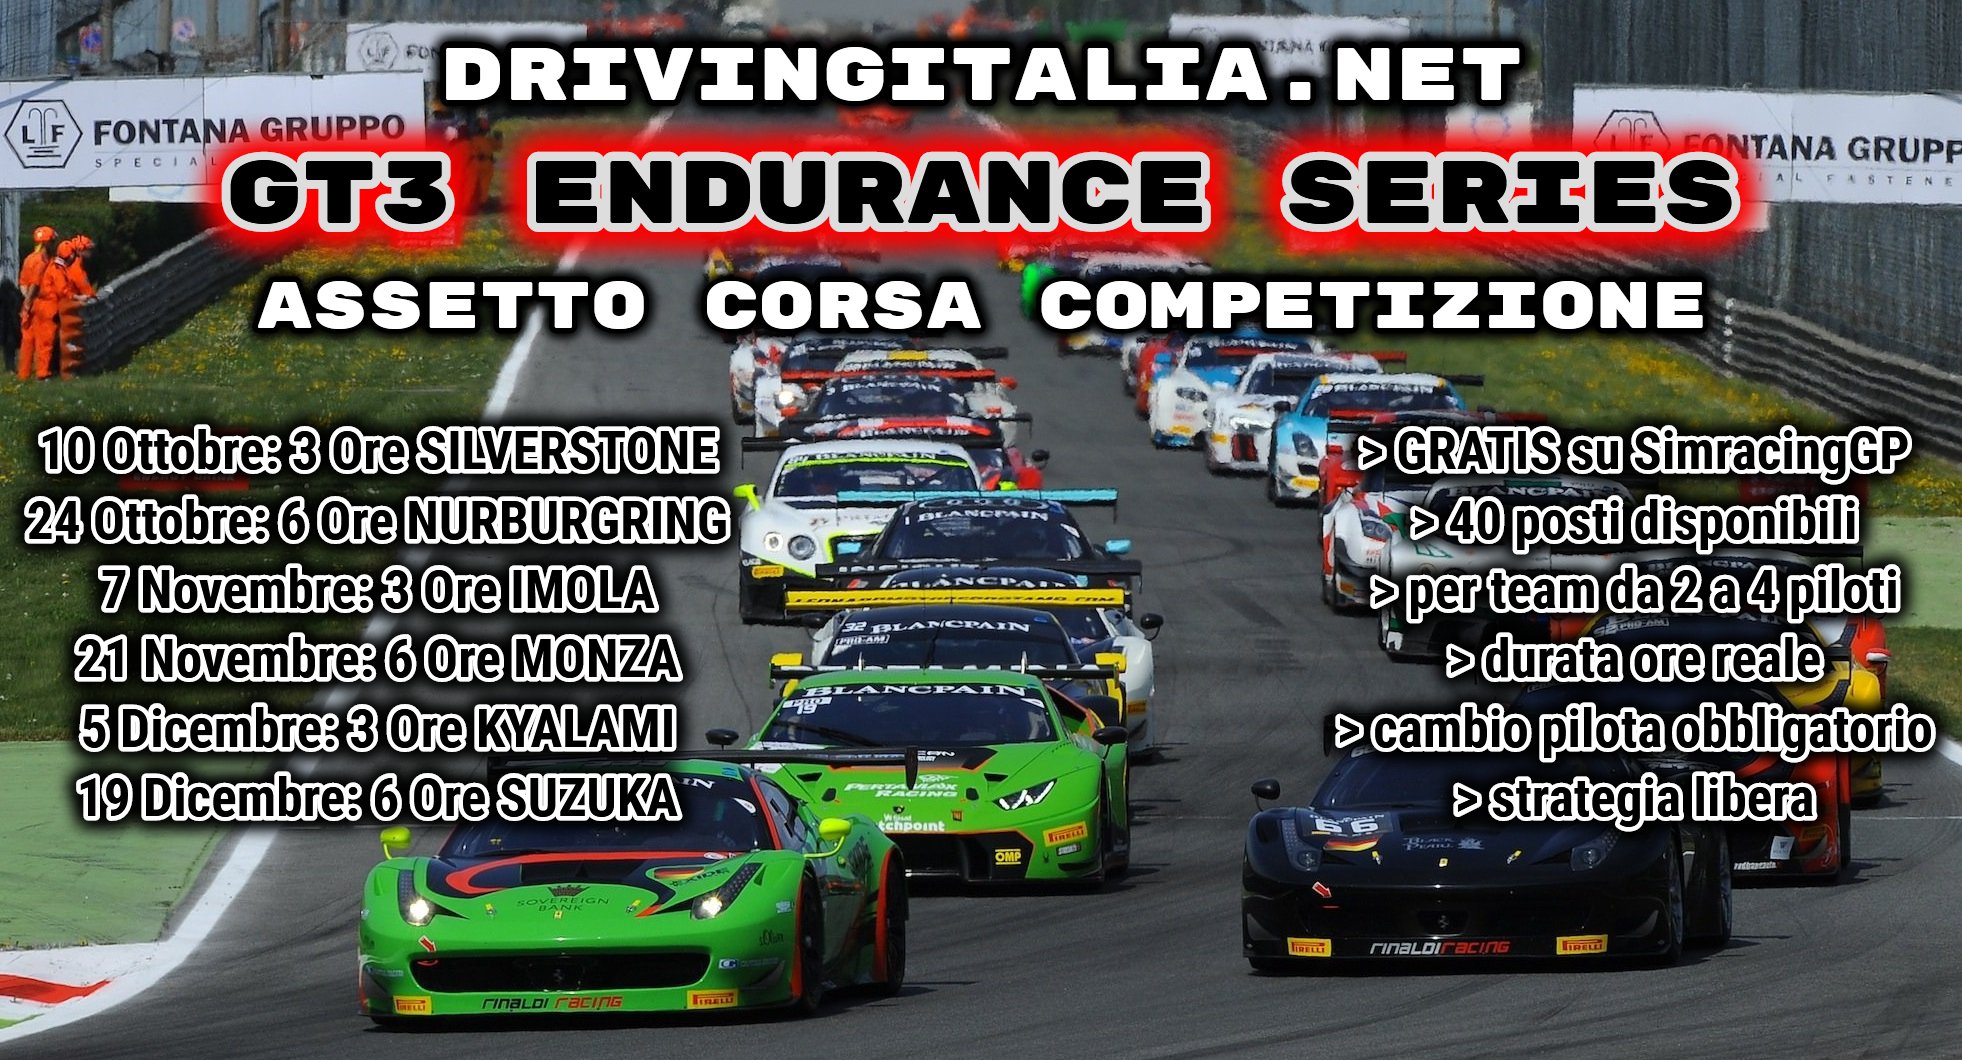 More information about "Assetto Corsa Competizione: GT3 Endurance Series, dal 10 Ottobre la VERA endurance per teams!"